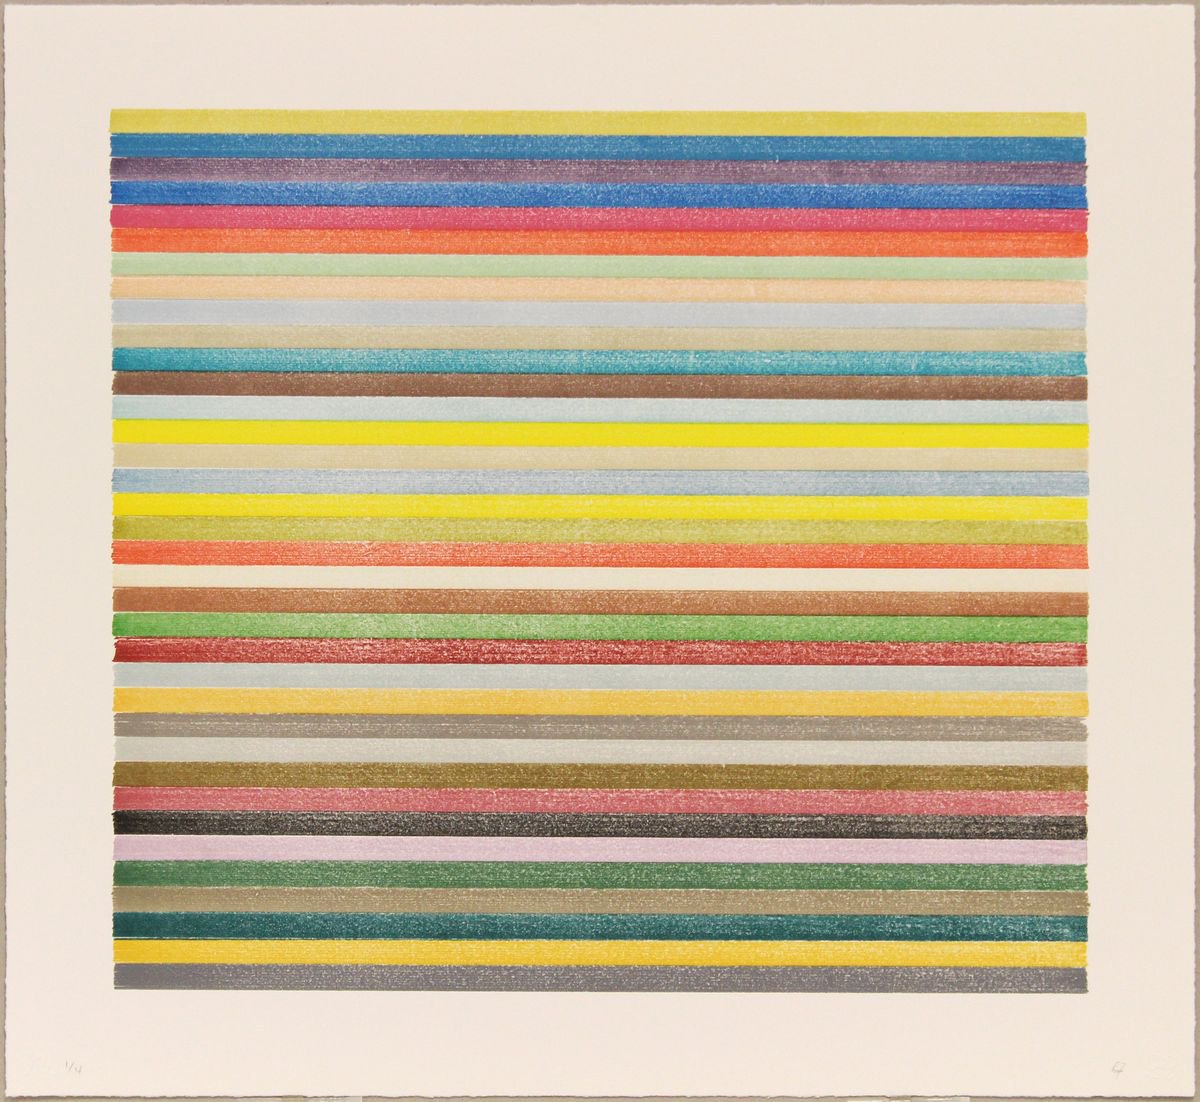 Stripes 16-403 by Lee Turner